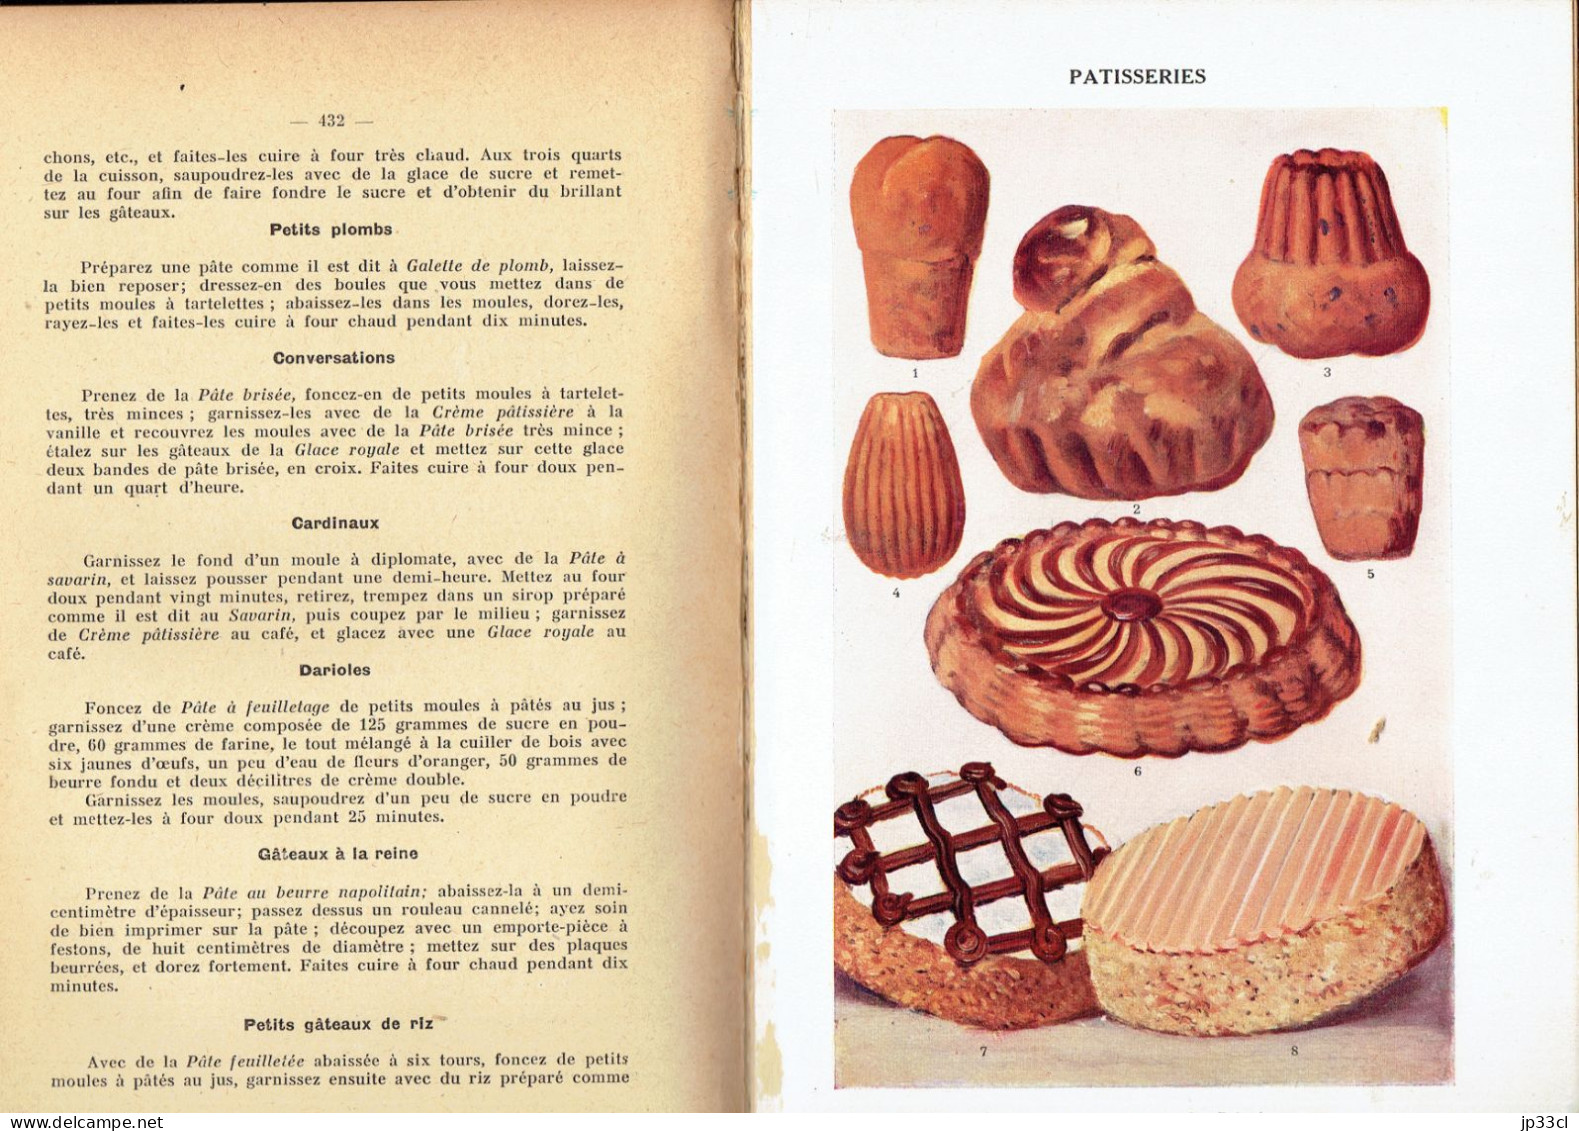 La Cuisine Moderne Illustrée (Collectif, Éd. Aristide Quillet, Sans Date, 602 Pages) - Encyclopaedia